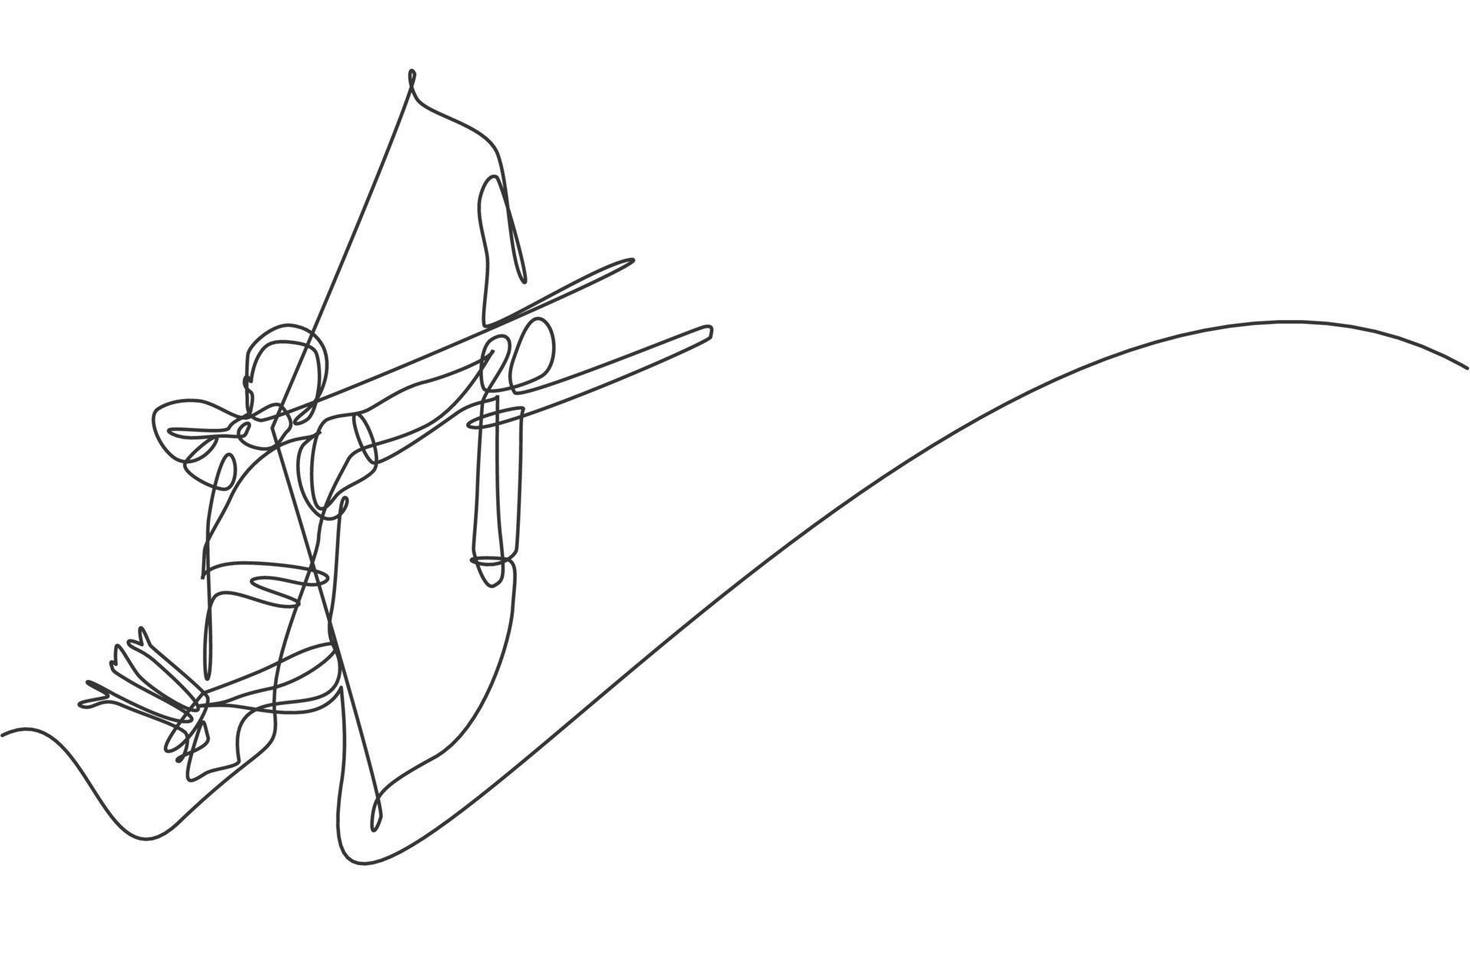 um único desenho de linha do foco do jovem arqueiro exercitando o tiro com arco para acertar a ilustração gráfica do vetor alvo. tiro de atualização saudável com conceito de esporte de arco. design moderno de desenho de linha contínua